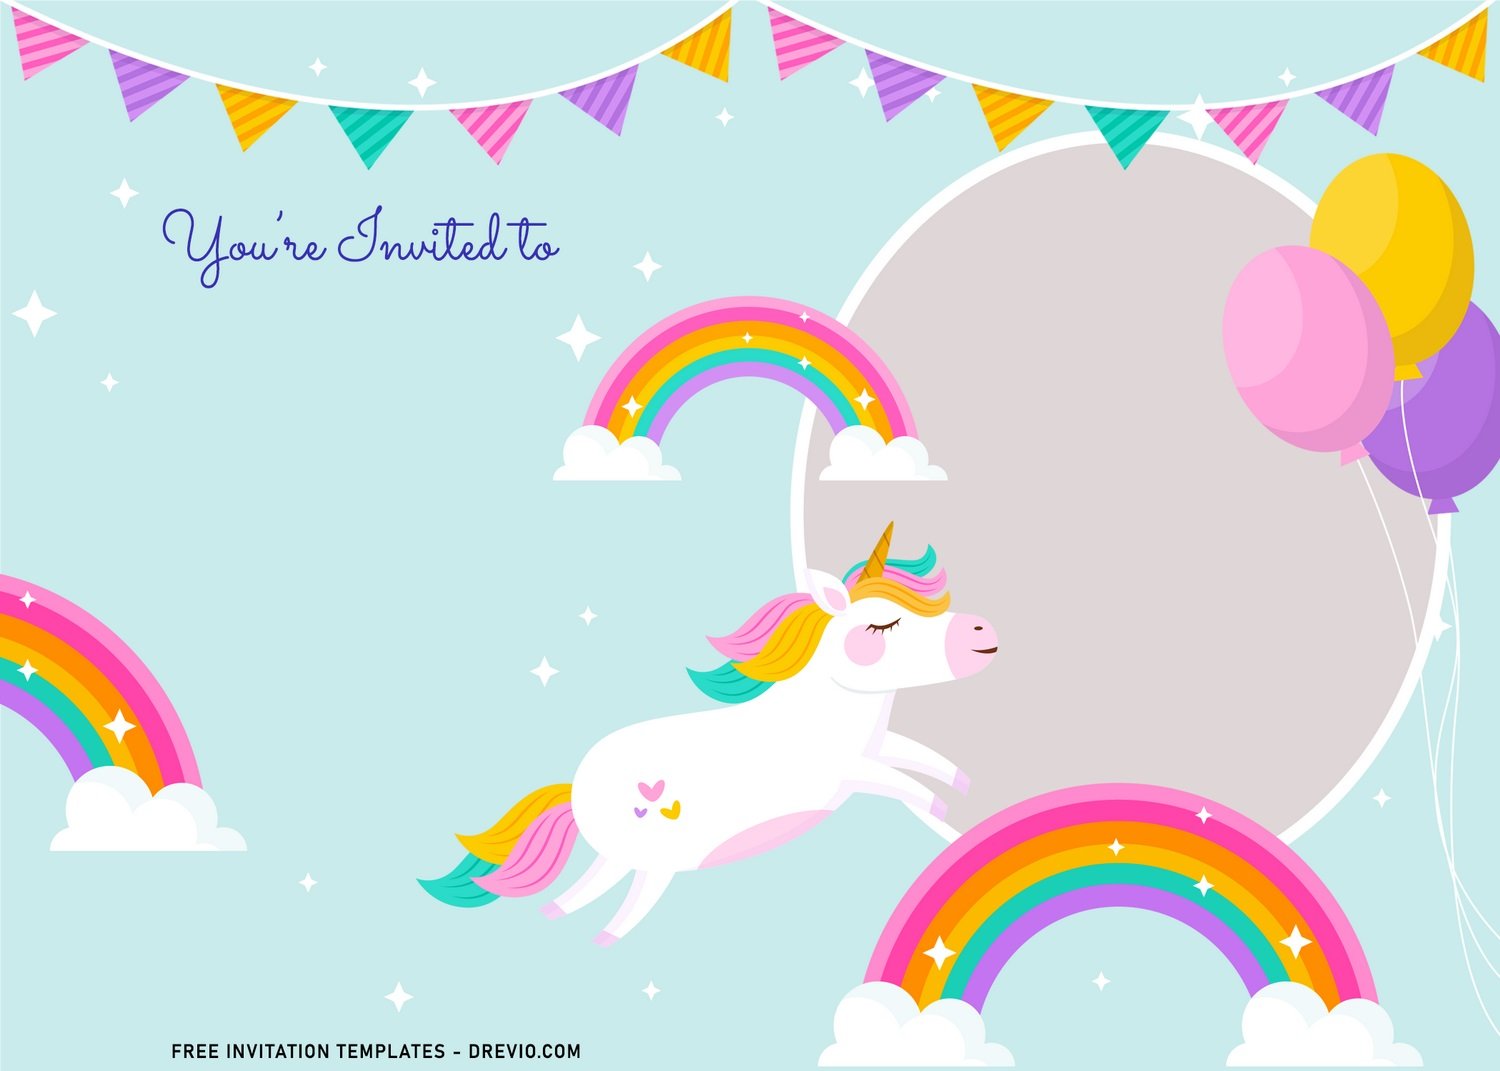 Tạo bất ngờ cho khách mời của bạn với lời mời sinh nhật đầy màu sắc. Những mẫu Unicorn Birthday Invitation Templates độc đáo và sáng tạo luôn sẵn sàng chờ đón bạn.